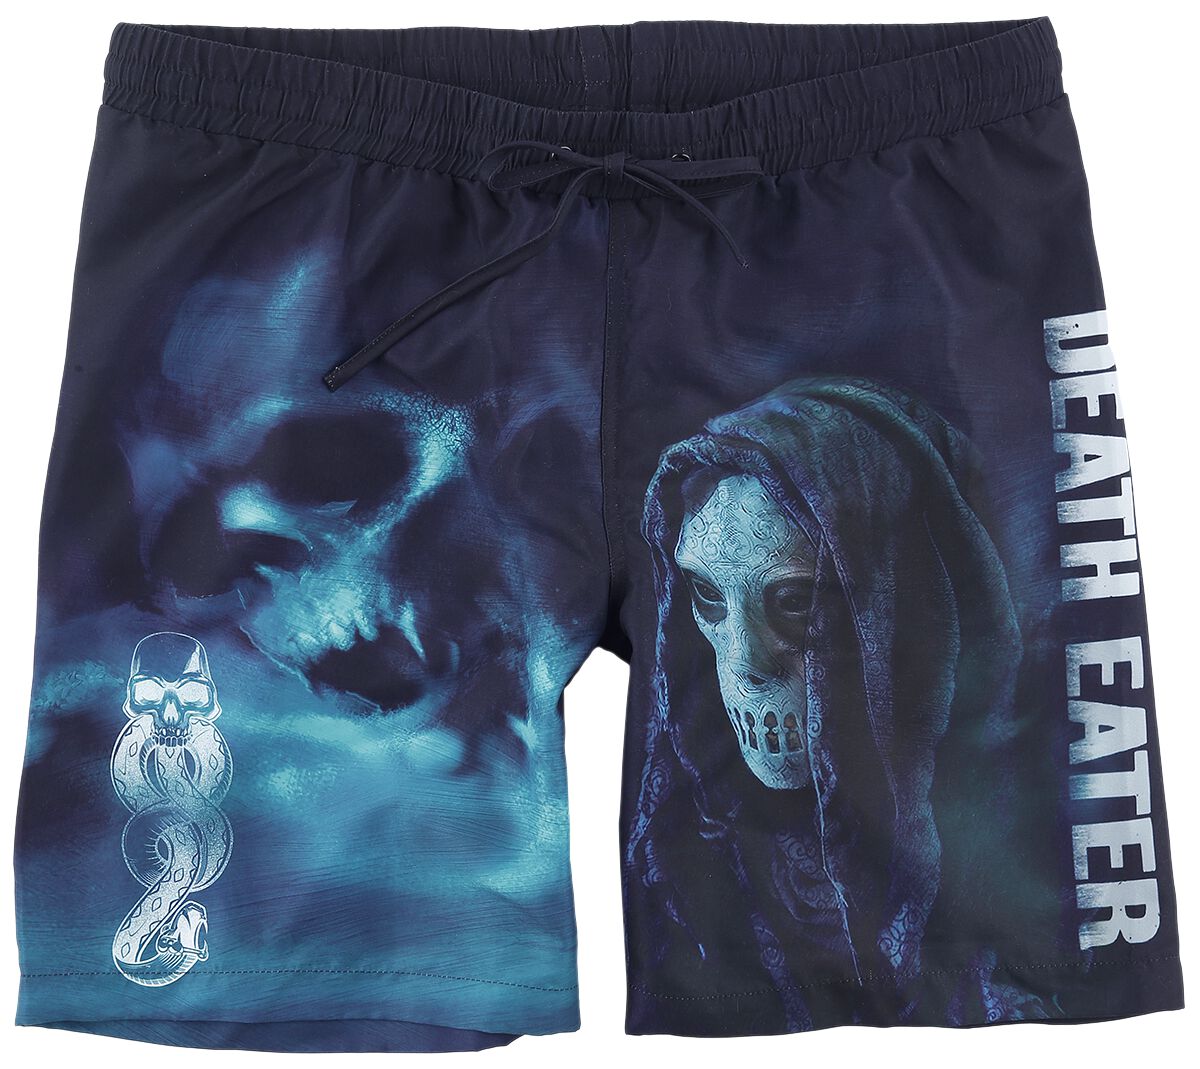 Harry Potter Badeshort - Death Eater - S bis L - für Männer - Größe S - schwarz  - EMP exklusives Merchandise!